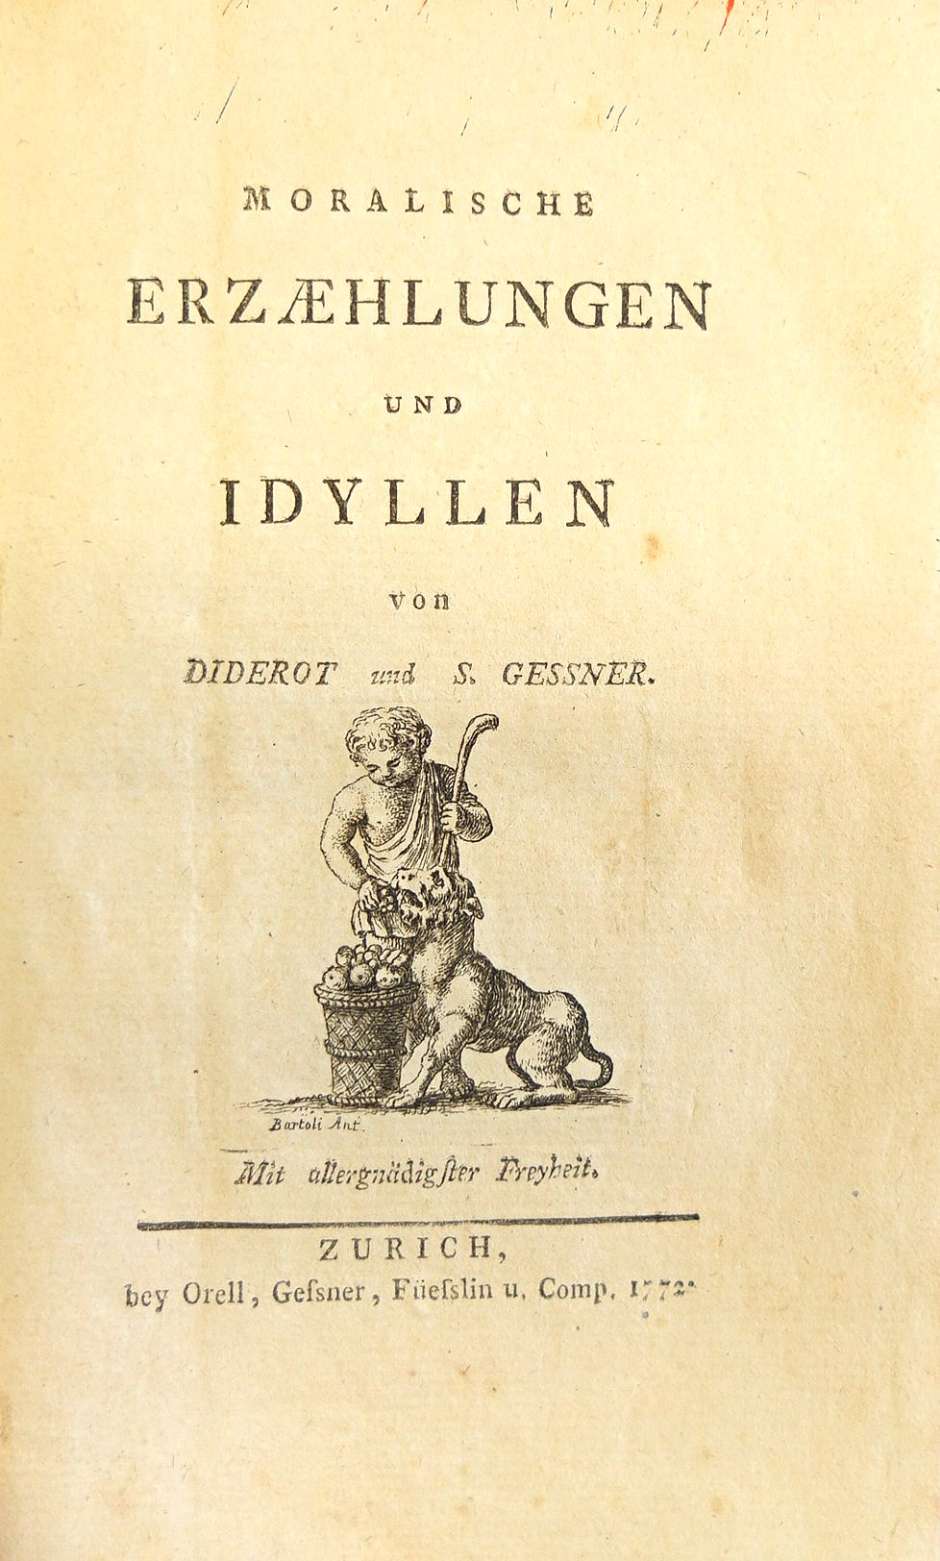 Lot 2062, Auction  115, Gessner, Salomon und Diderot, Denis, Moralische Erzählungen und Idyllen